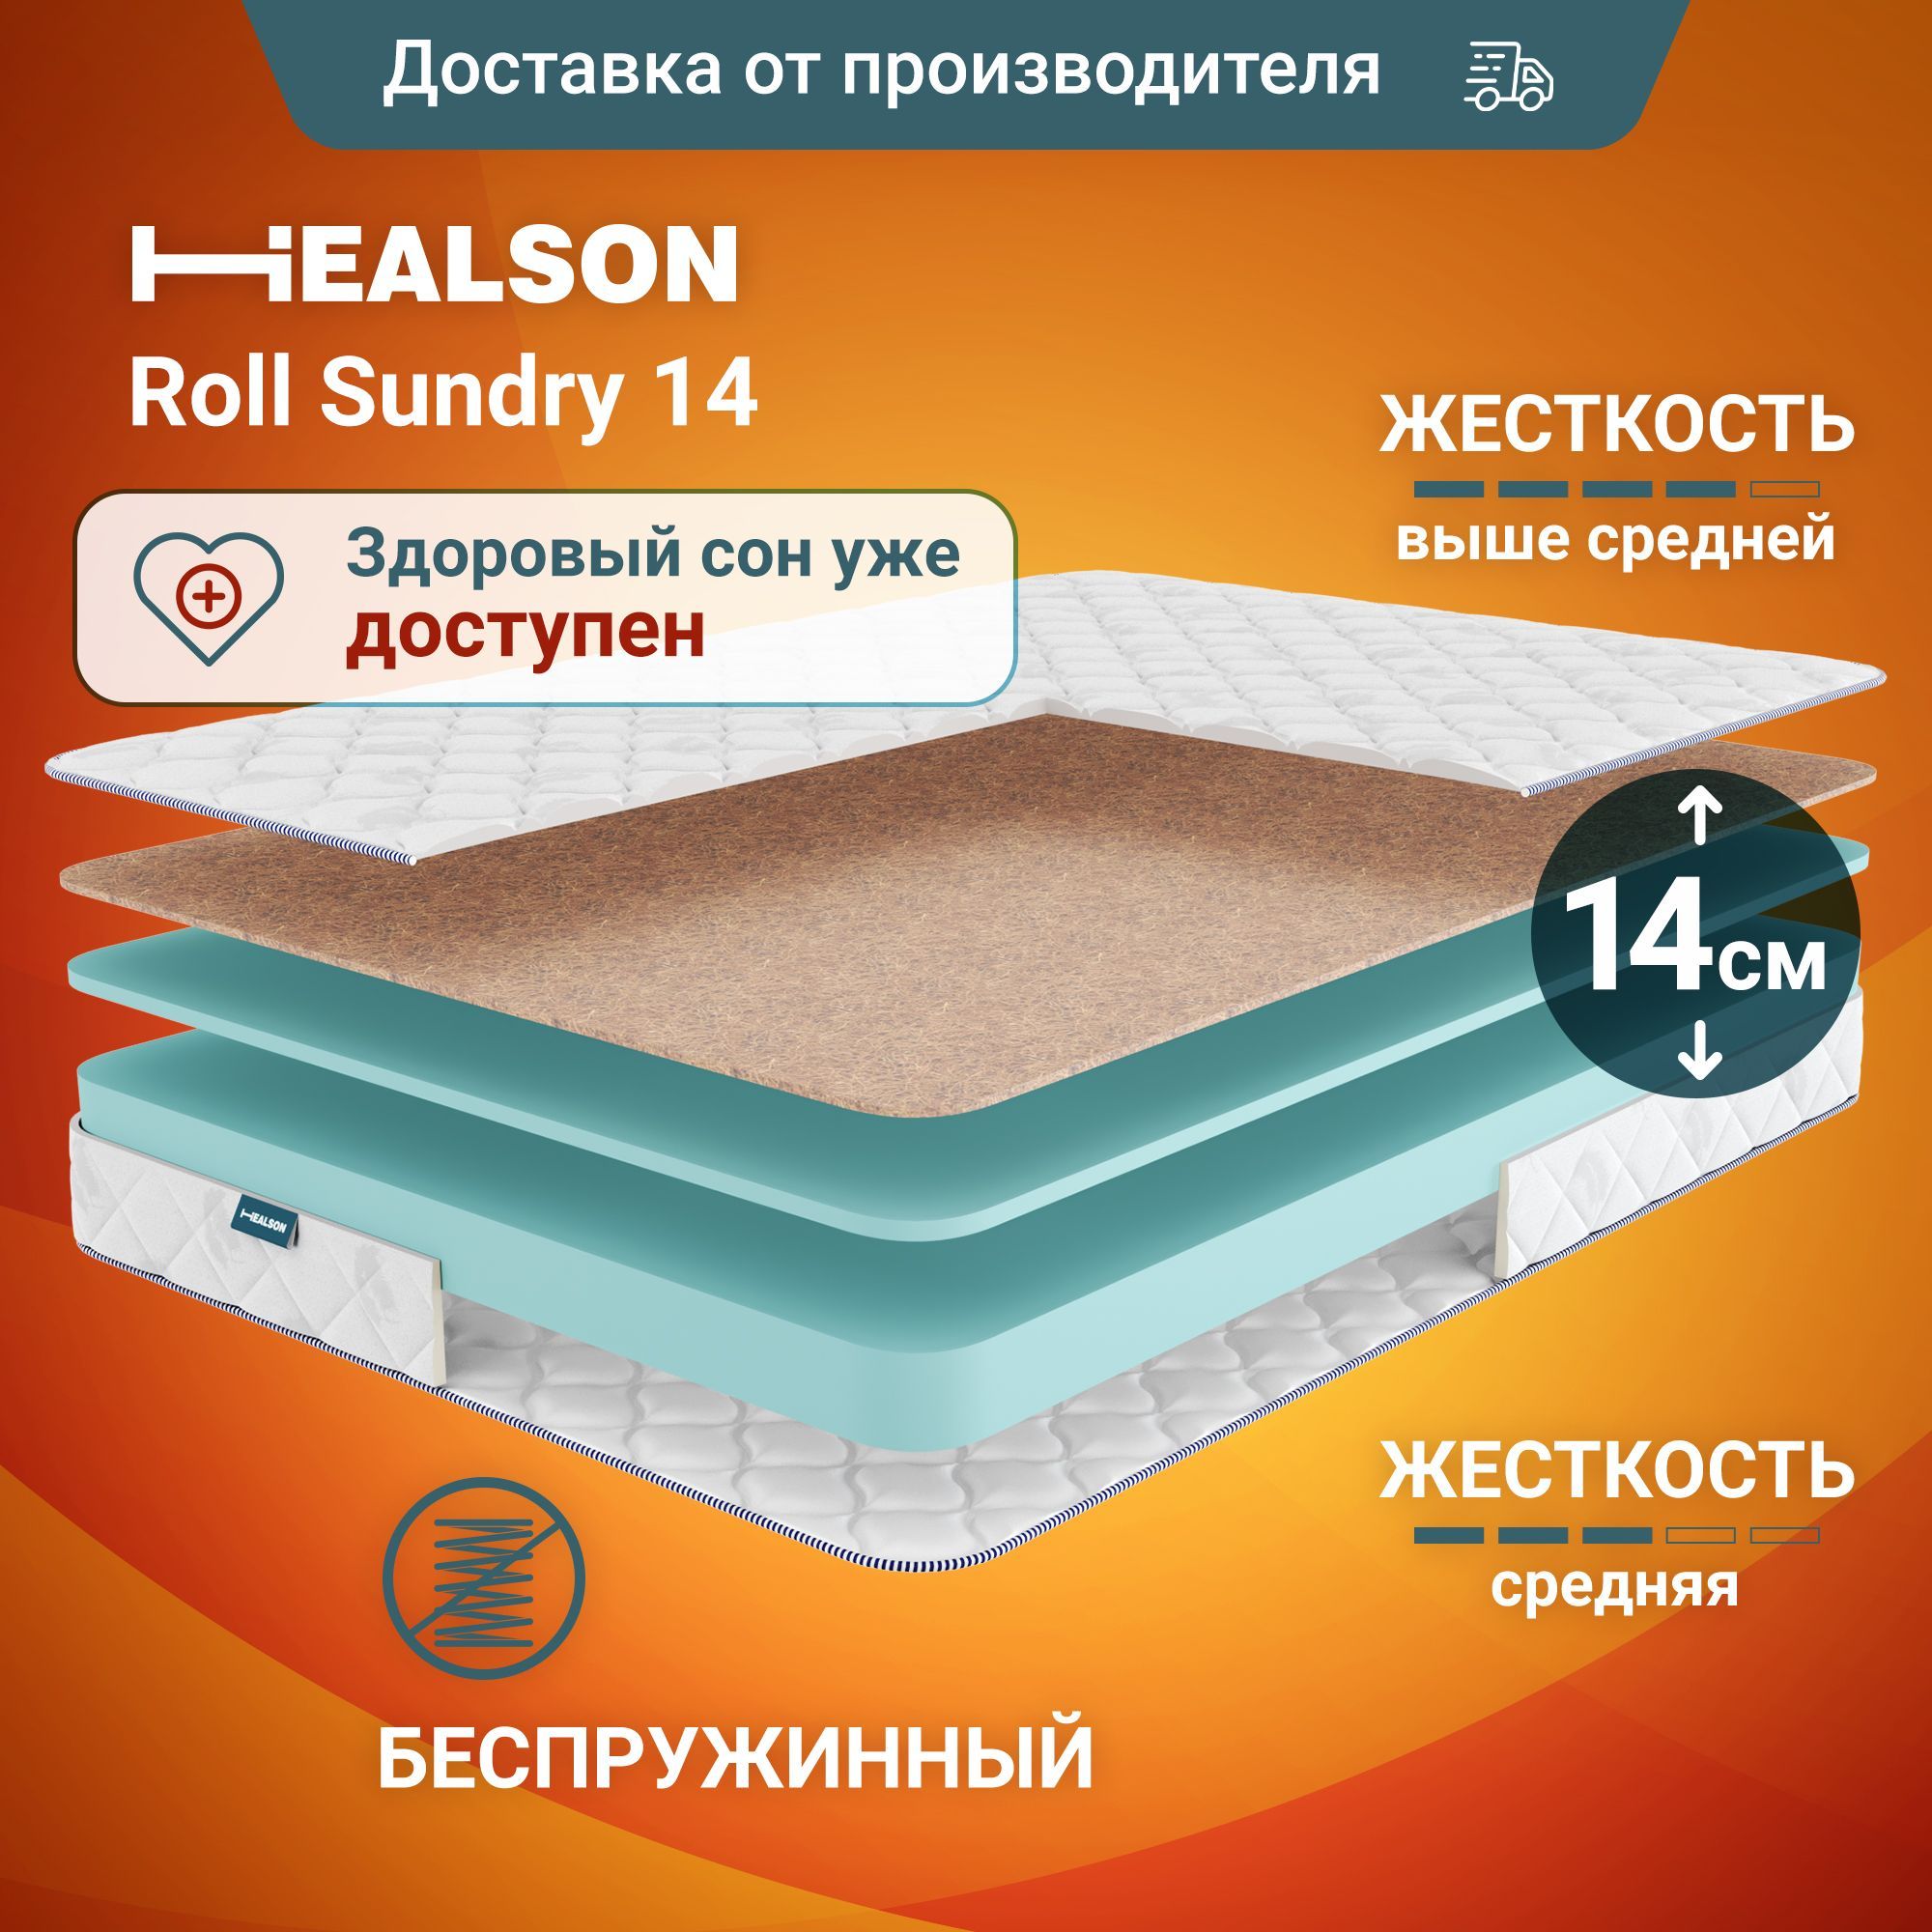 Матрас анатомический на кровать. Roll sundry 14 120х200